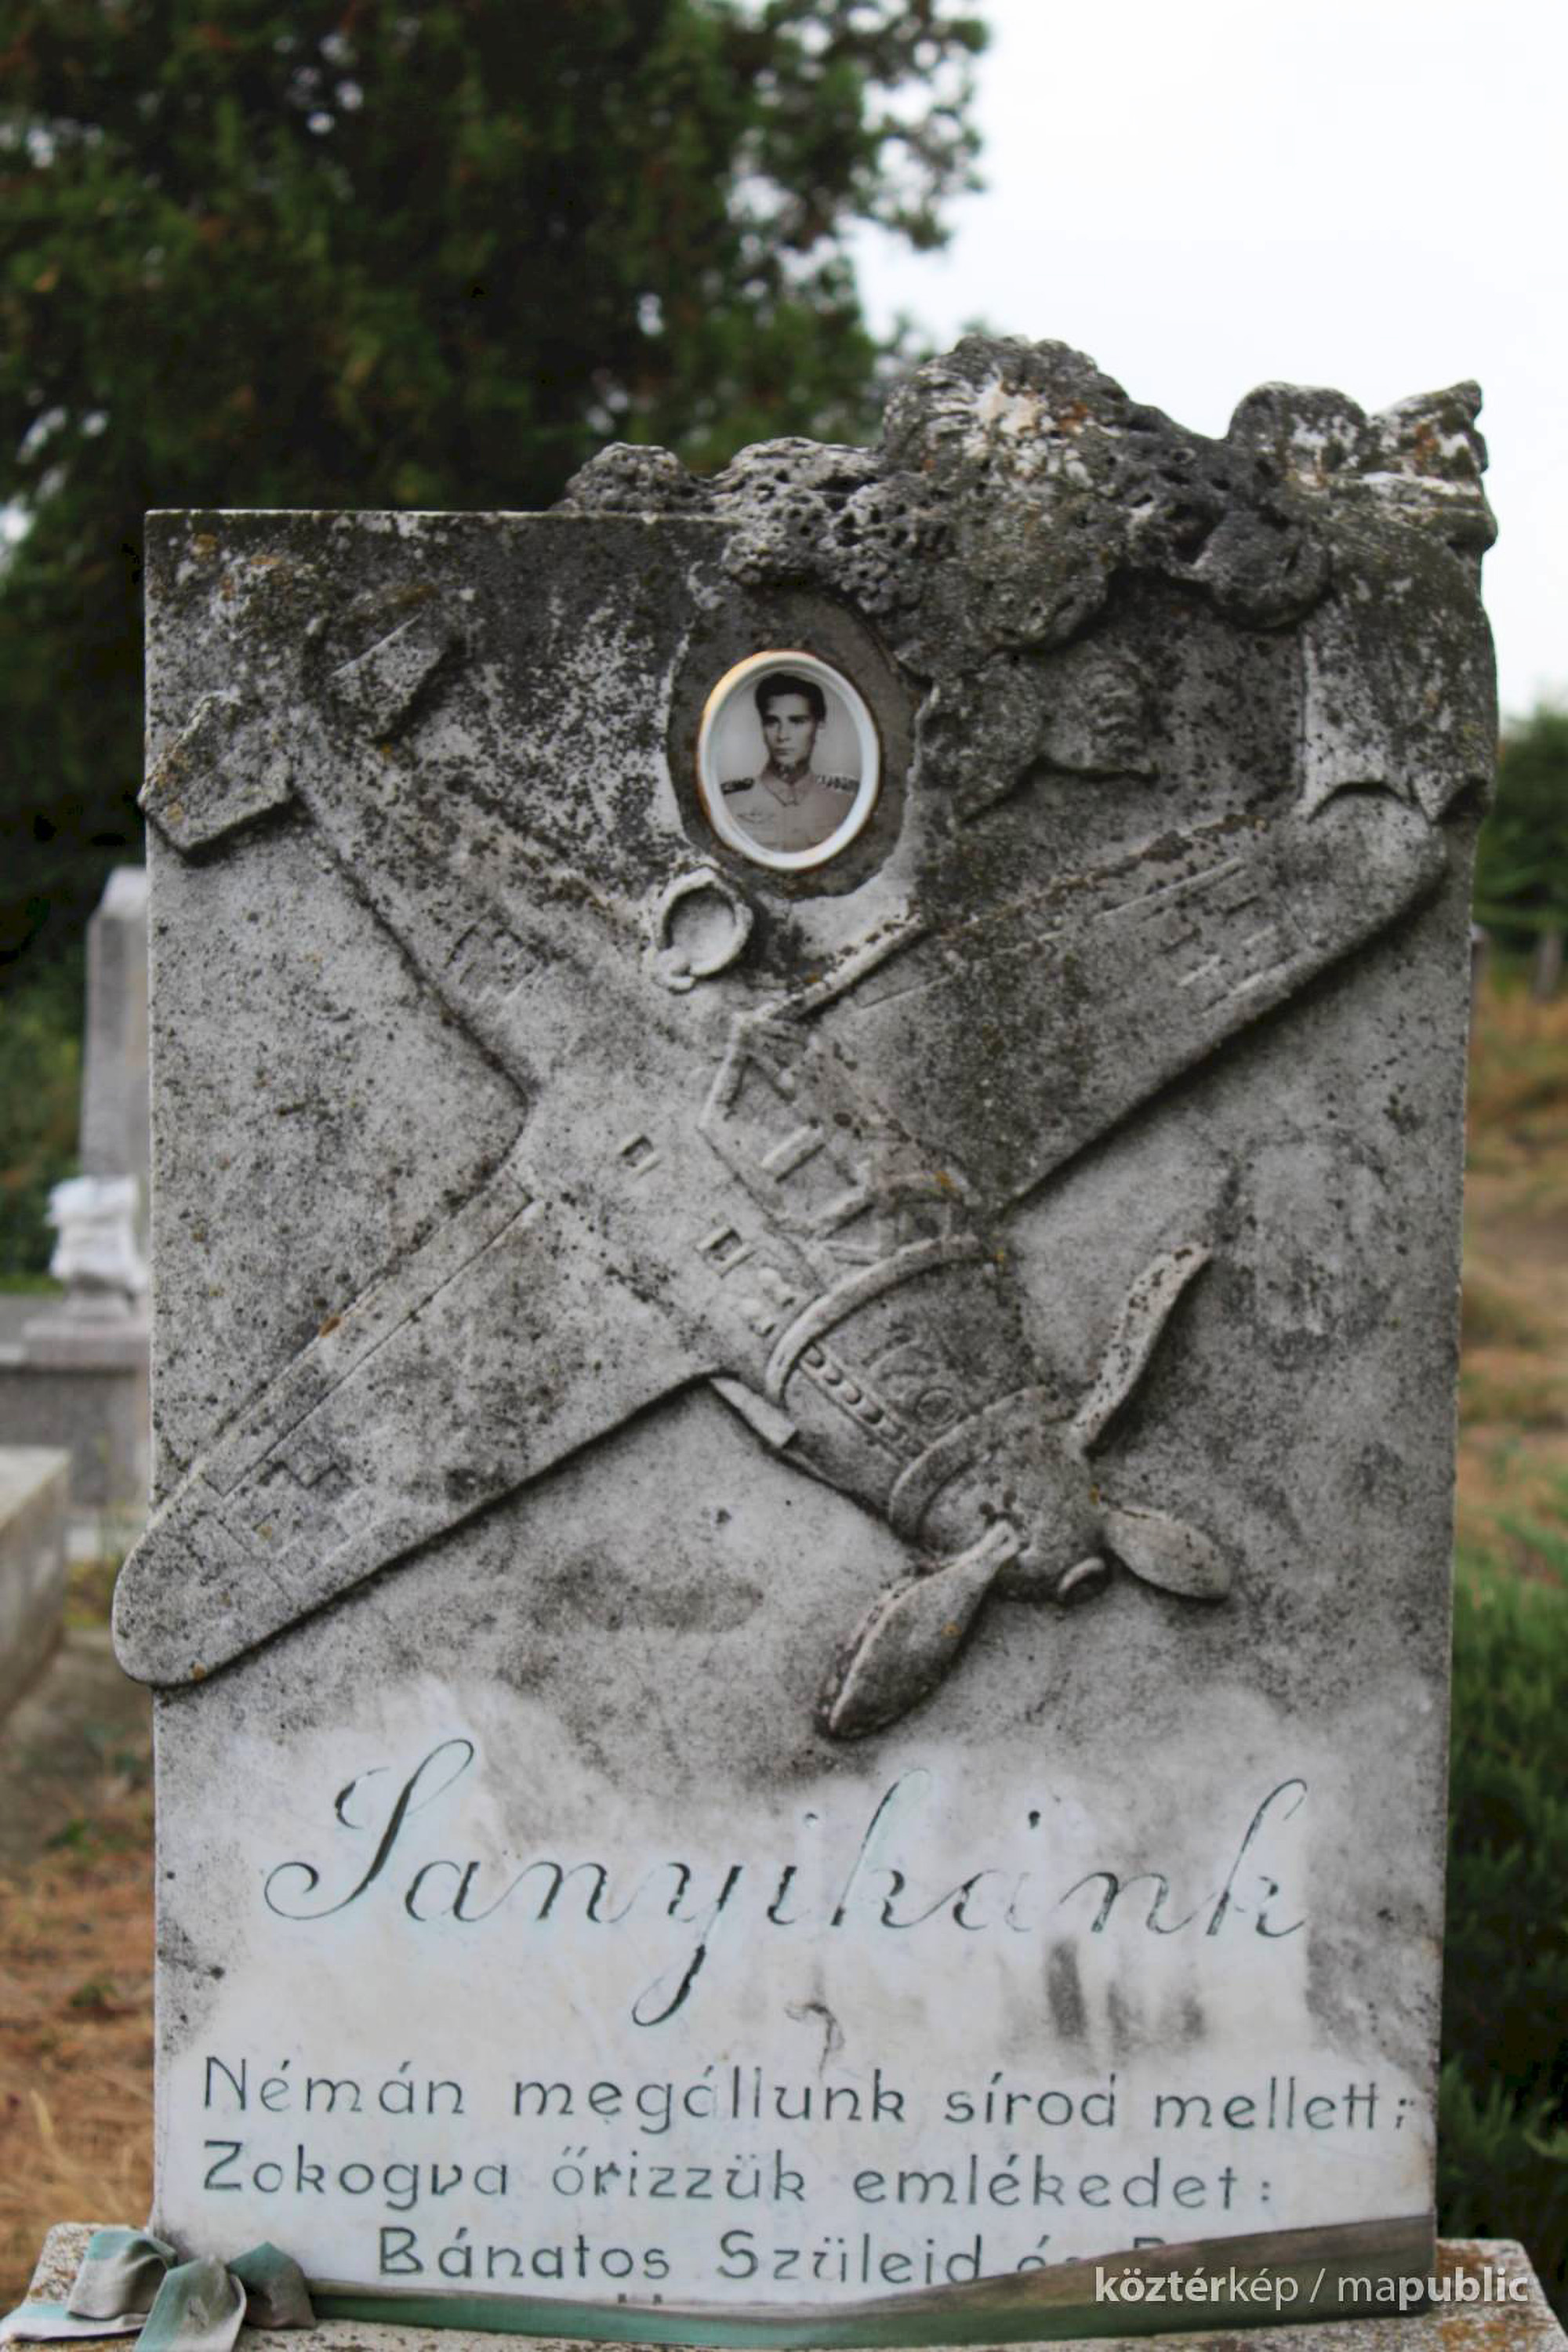 Das Grab von Sandor Beregssaszy, der in seiner Messerschmitt im Kampf gegen 1.000 US-Kampfflugzeuge getötet wurde